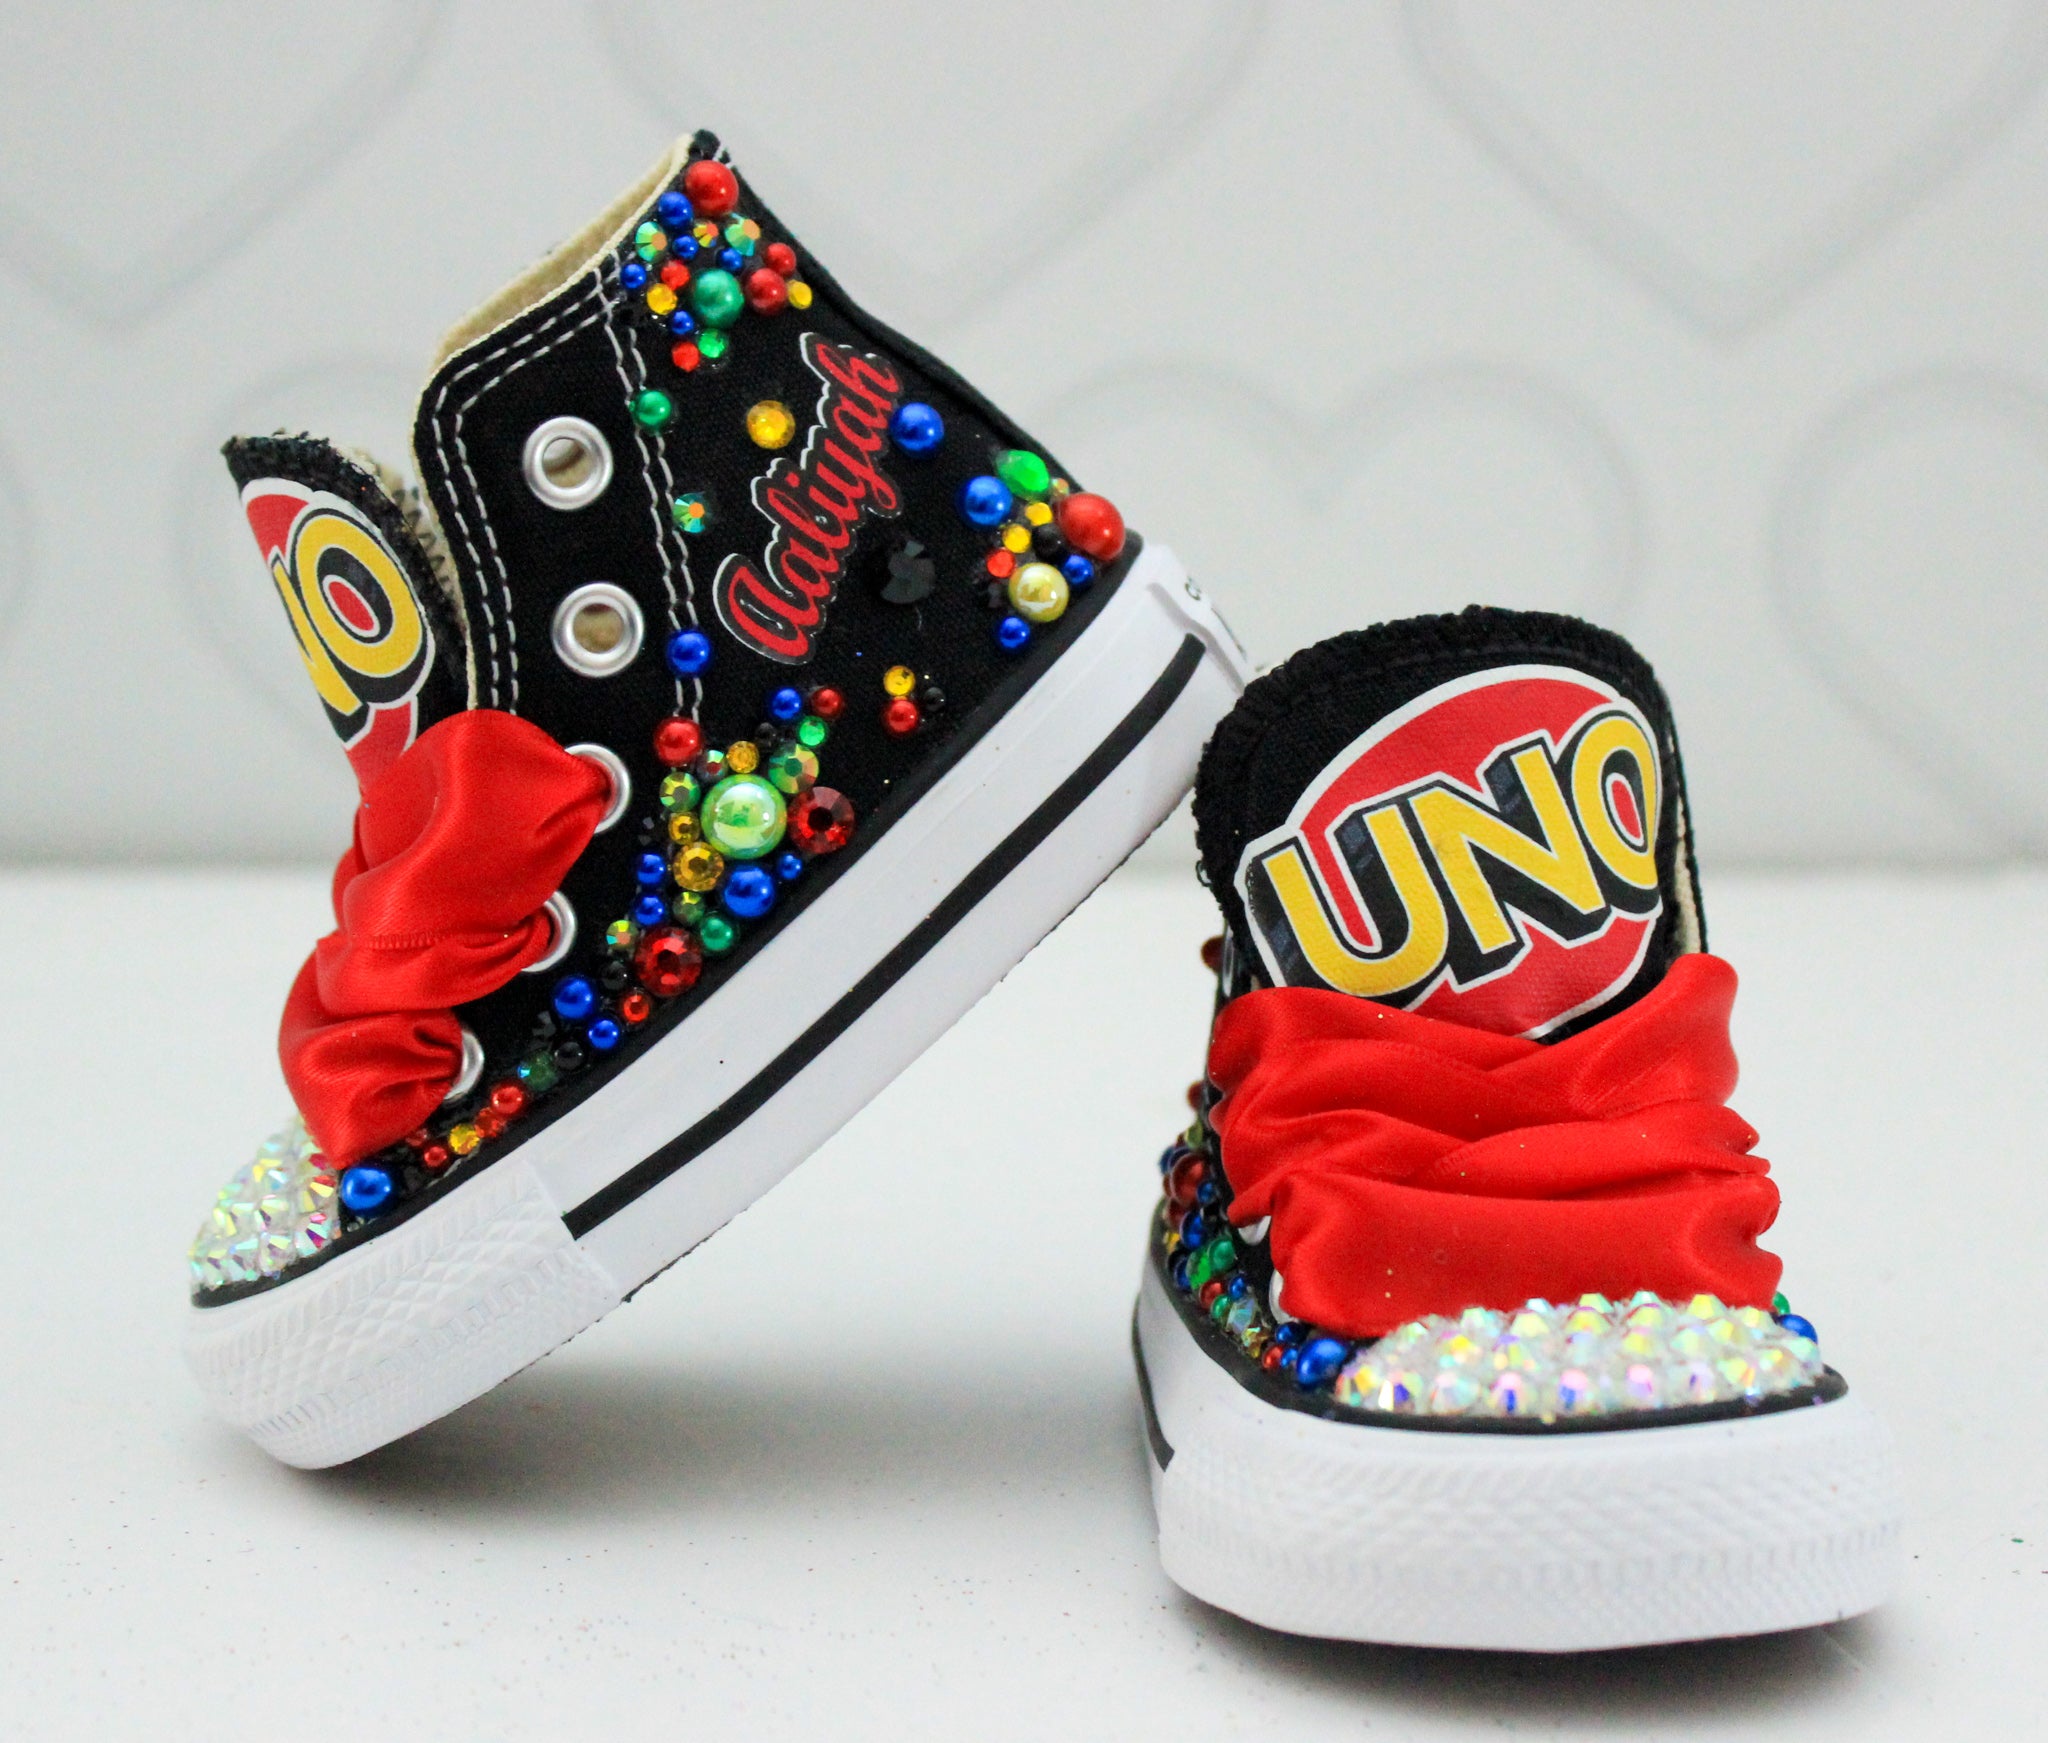 Uno shoes- Uno bling Converse-Girls Uno Shoes-Uno Converse